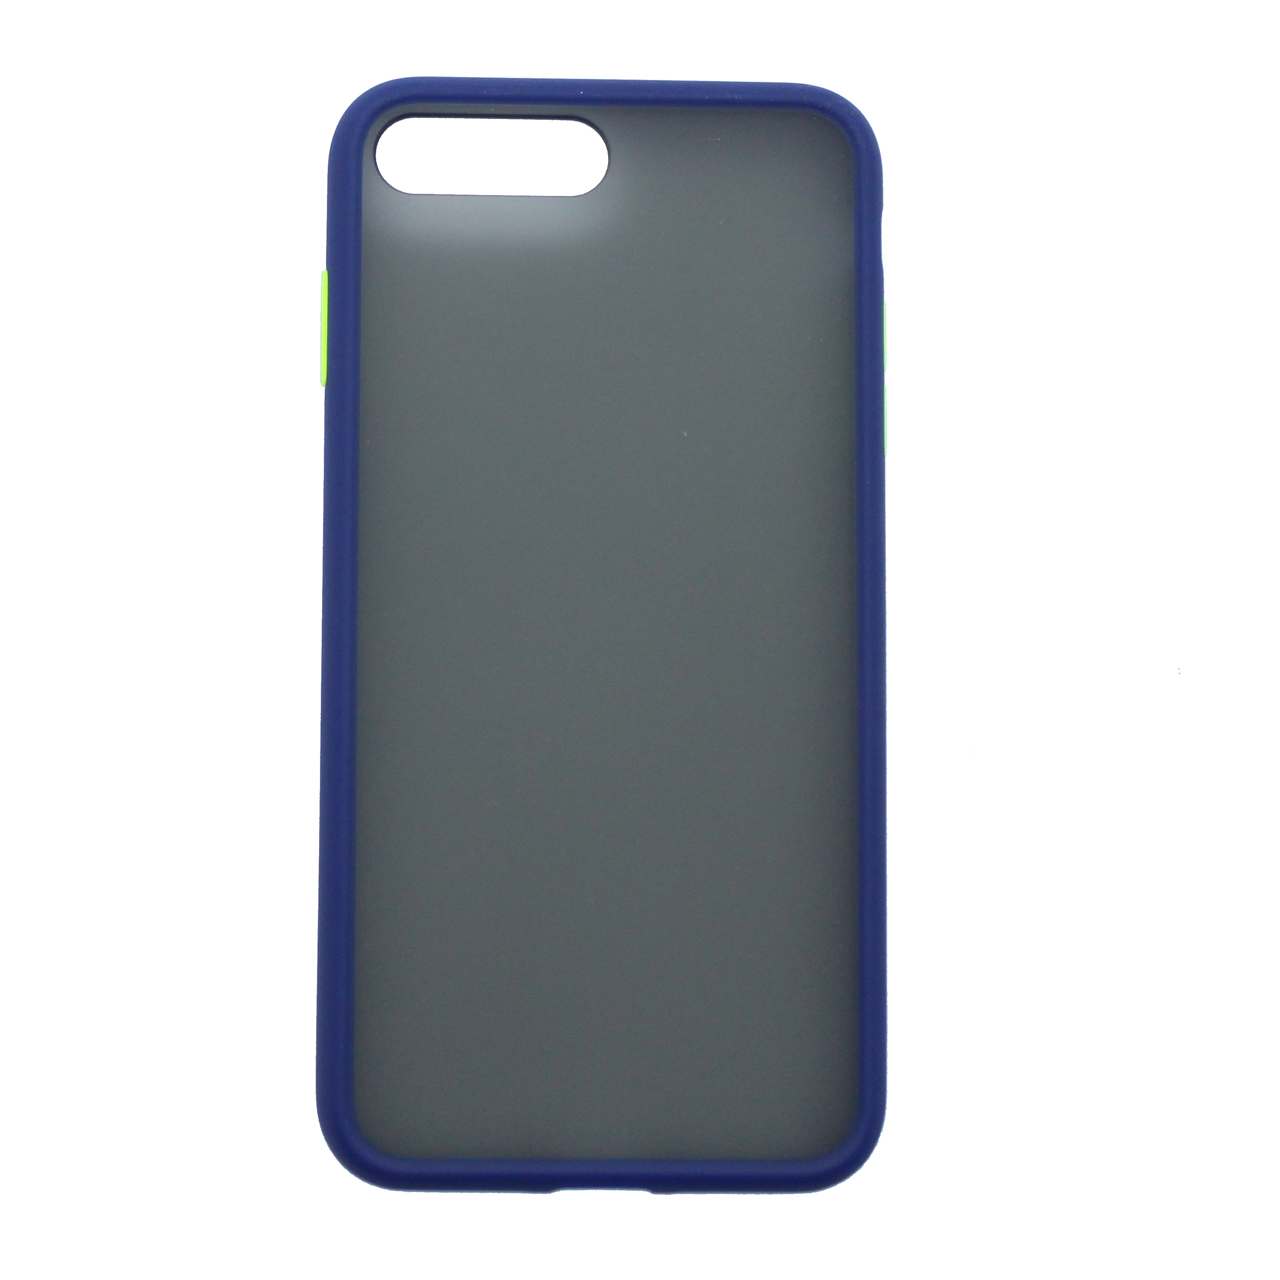 کاور یسیدو مدل G78 مناسب برای گوشی موبایل اپل iphone 7/8